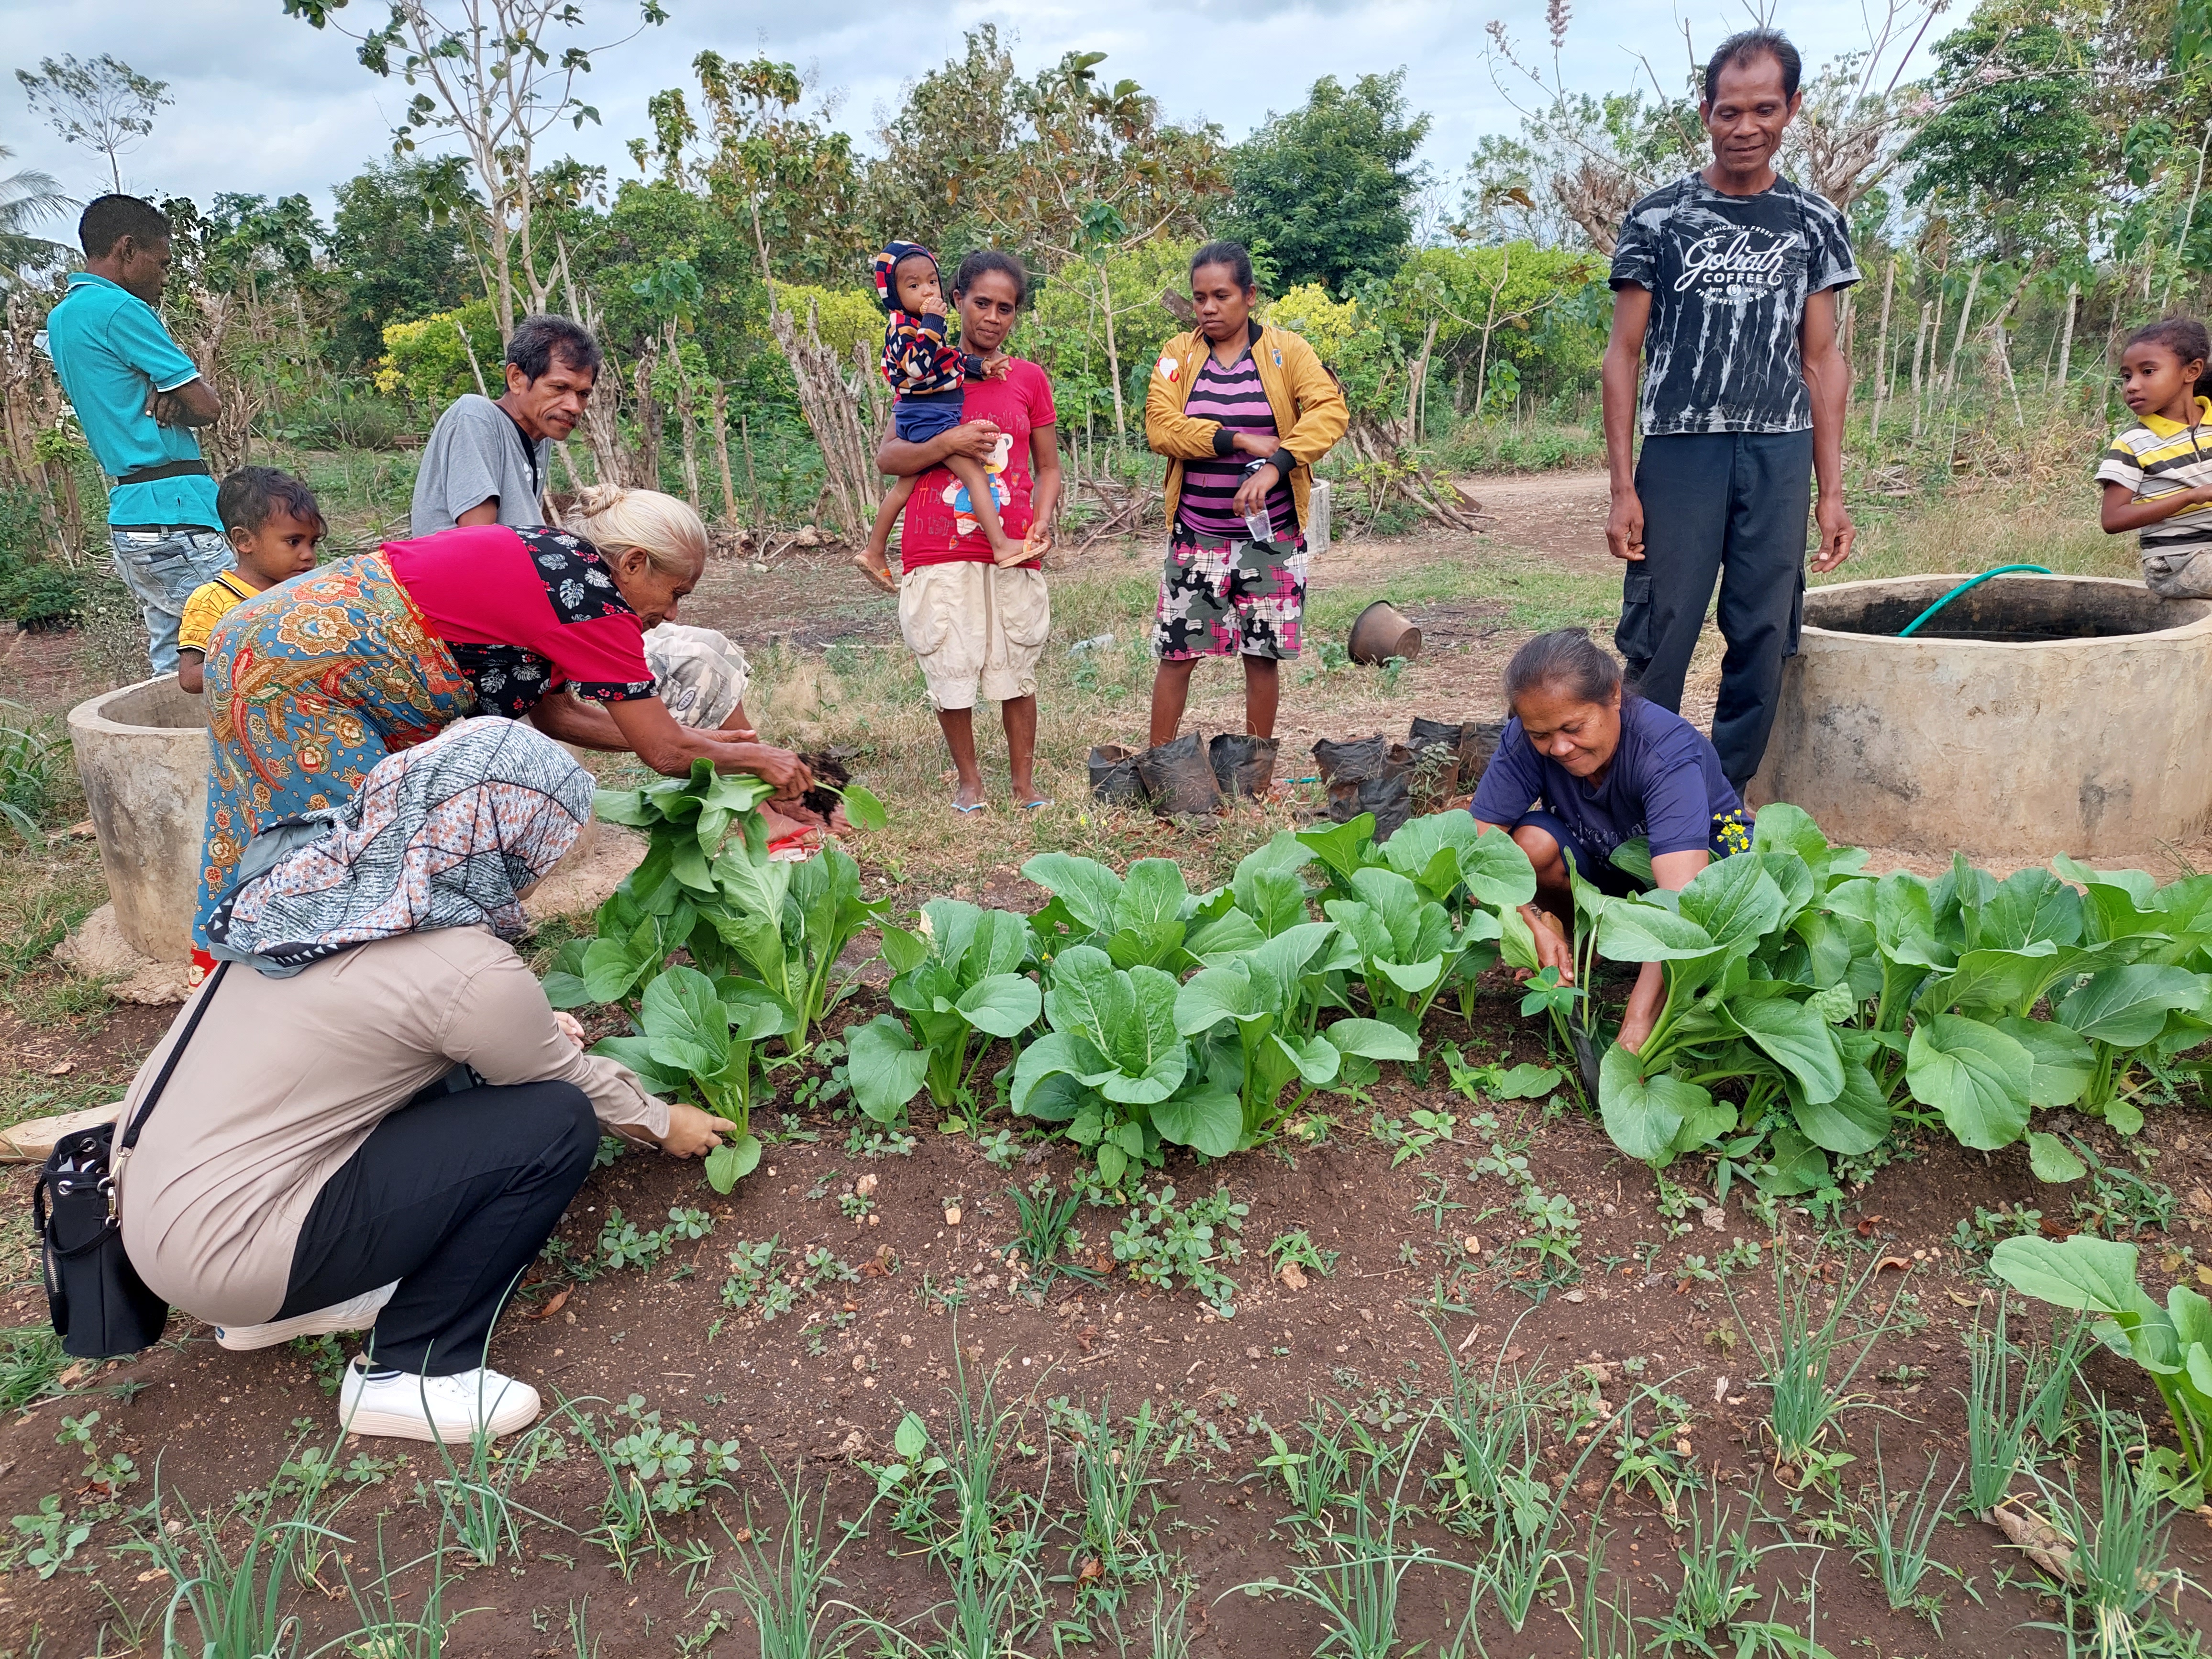 Group of people harvesting vegetables